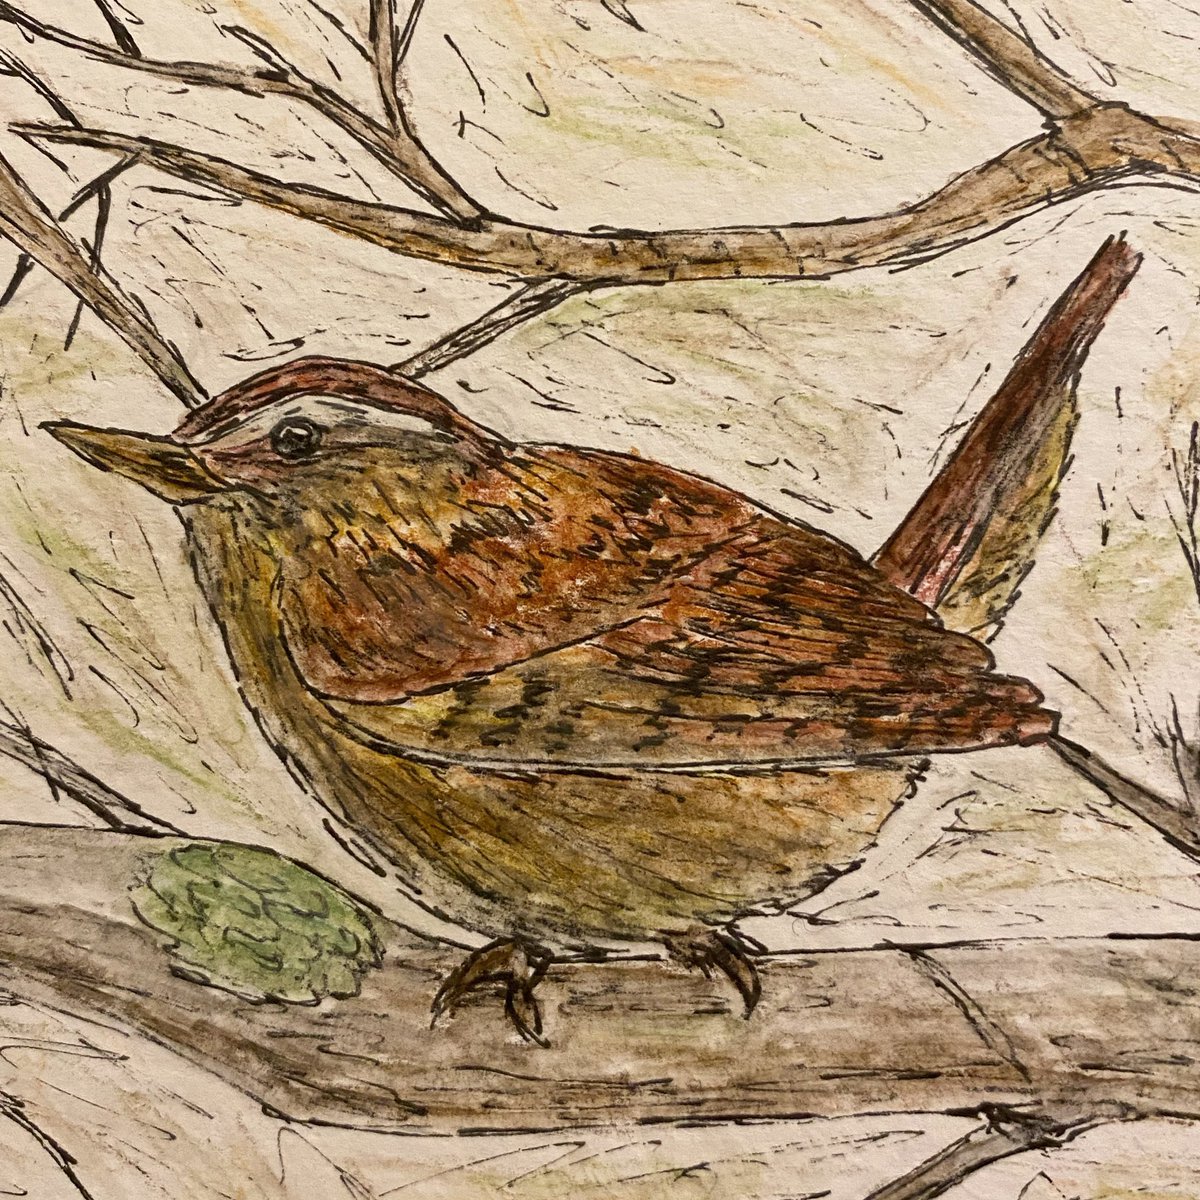 Boxing Day scribbles - little Jenny wren  in ink and watercolour pencil #birds #wren #sketch #scribble https://t.co/83bXtW2XMl